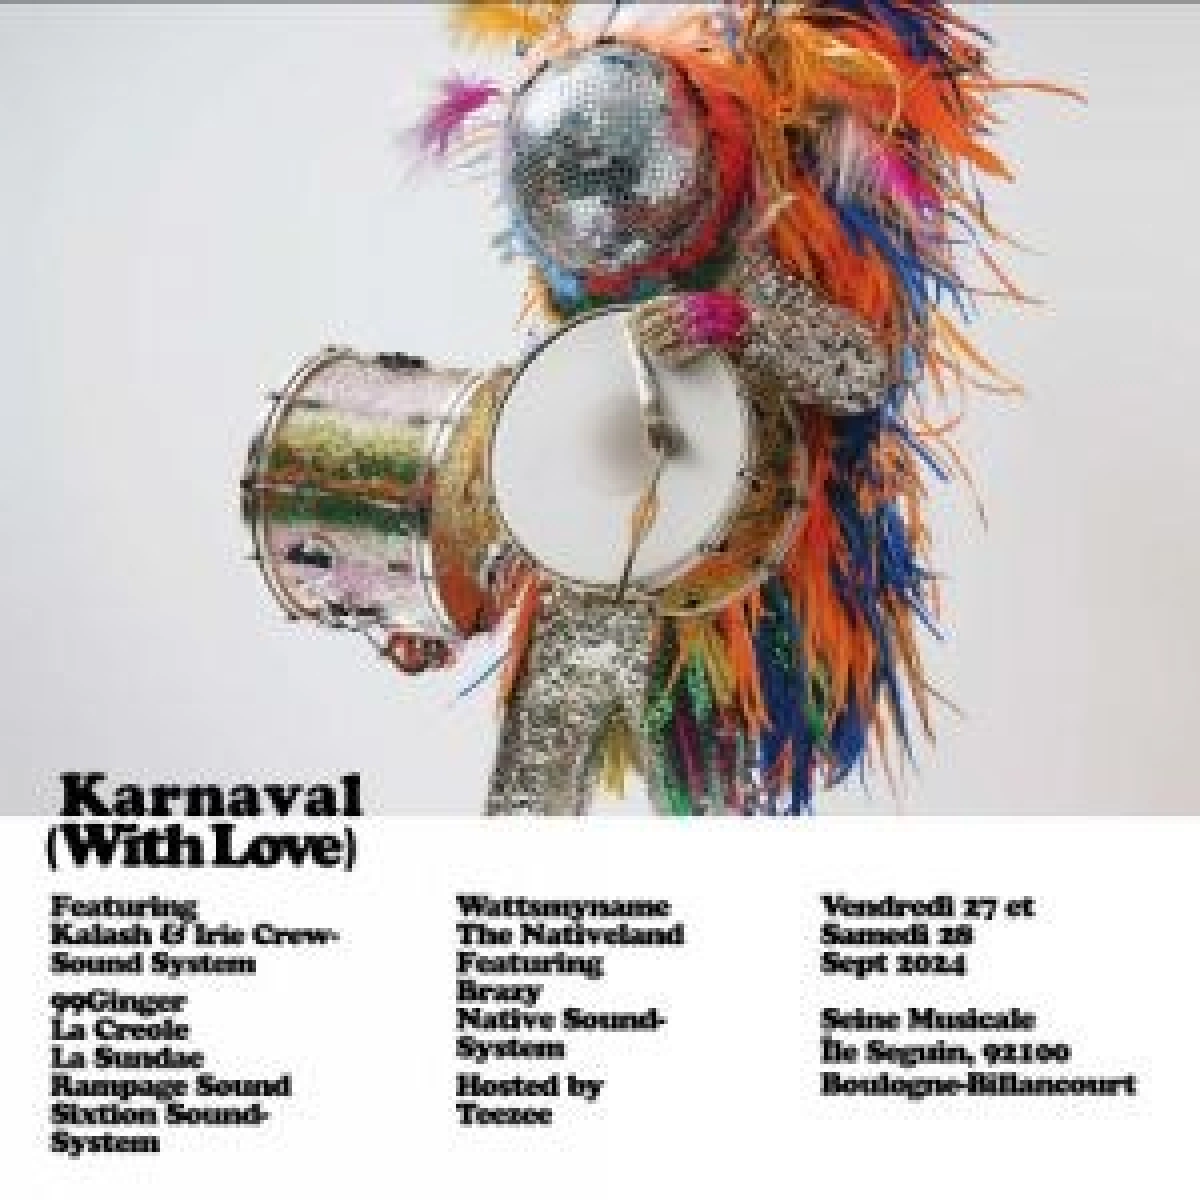 Karnaval in der La Seine Musicale Tickets